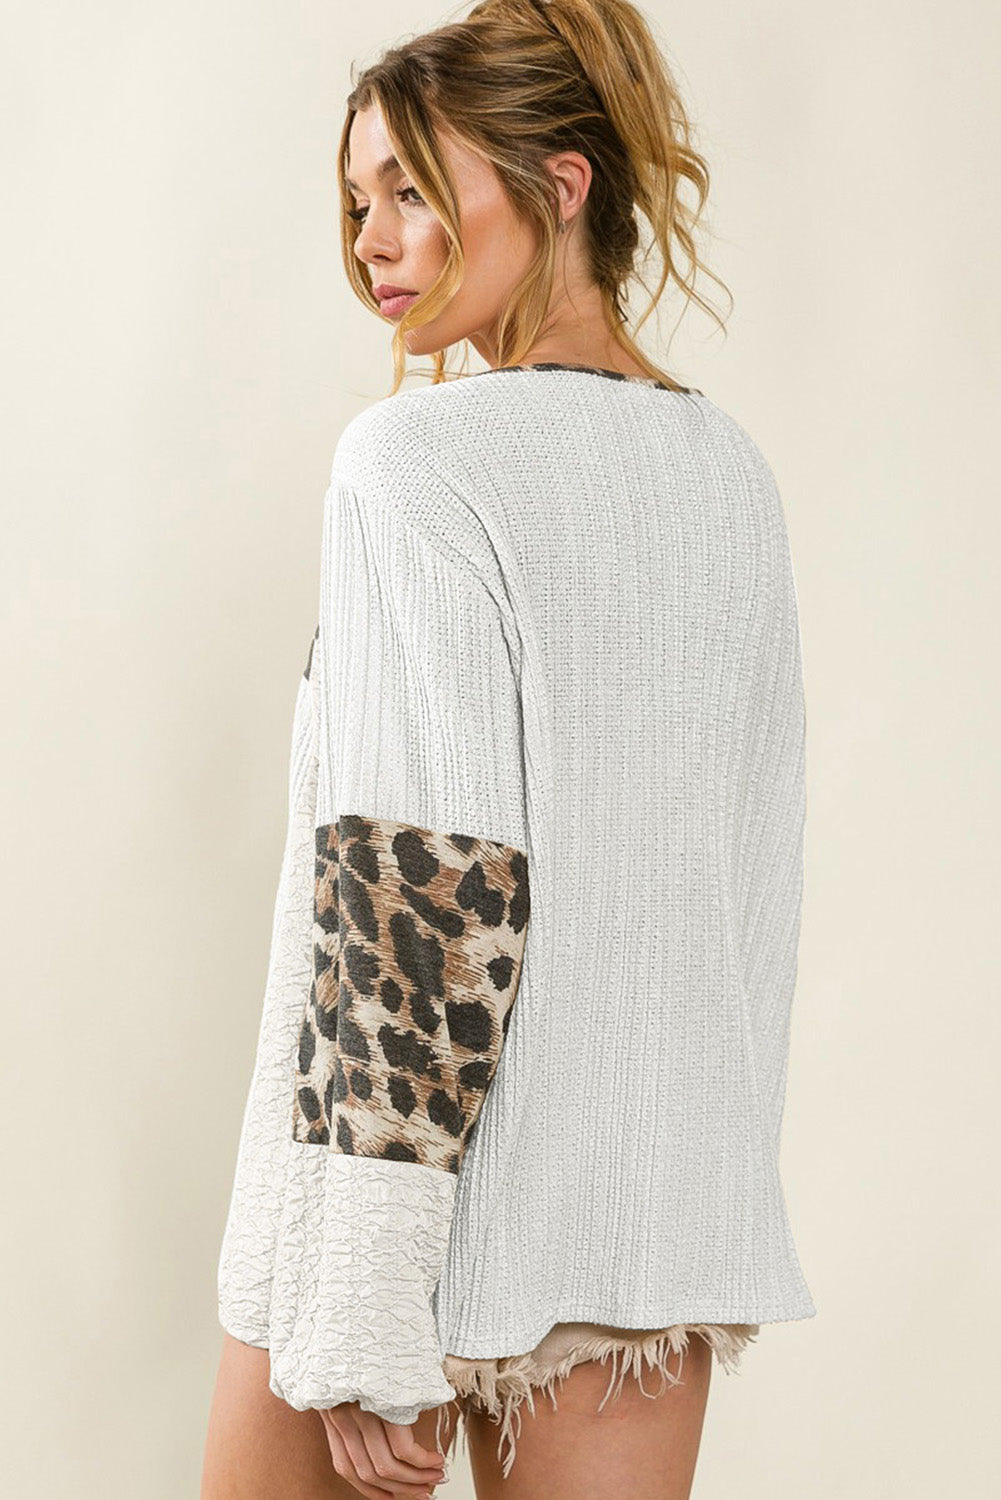 Weiße, strukturierte Bluse mit Leoparden-Patch und Puffärmeln